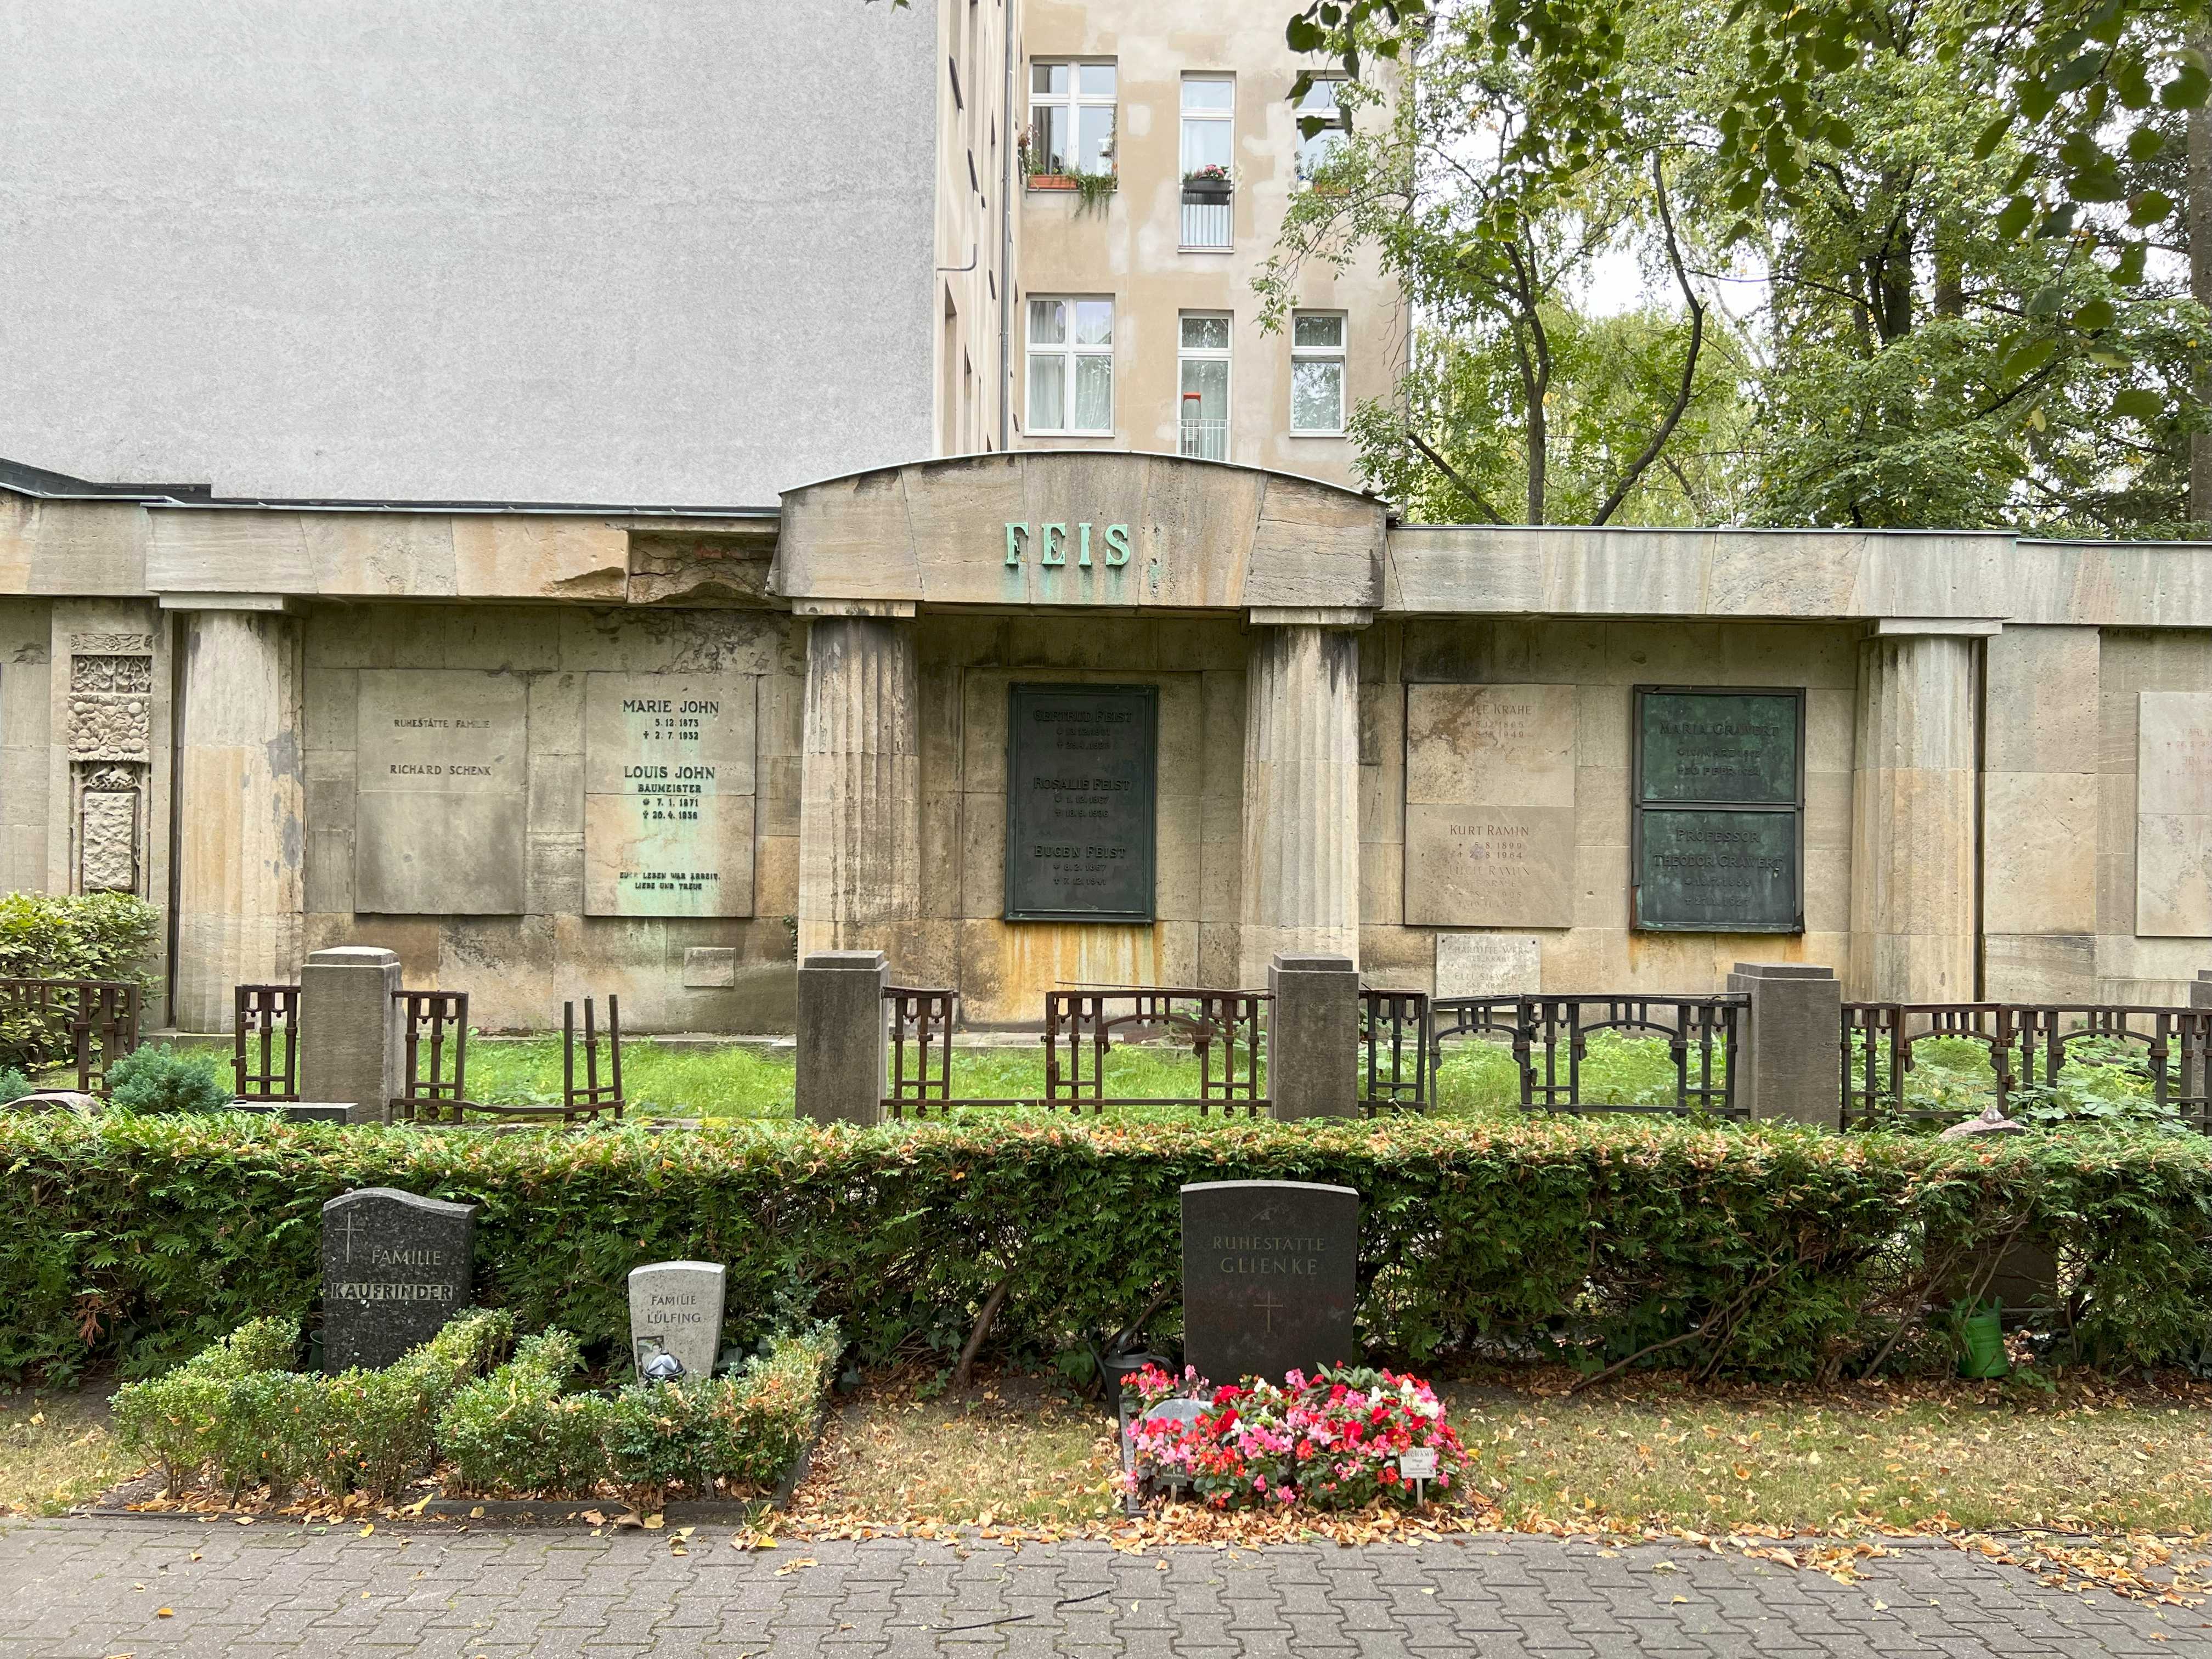 Grabstein Ernst Schultze-Klönne, Friedhof Wilmersdorf, Berlin